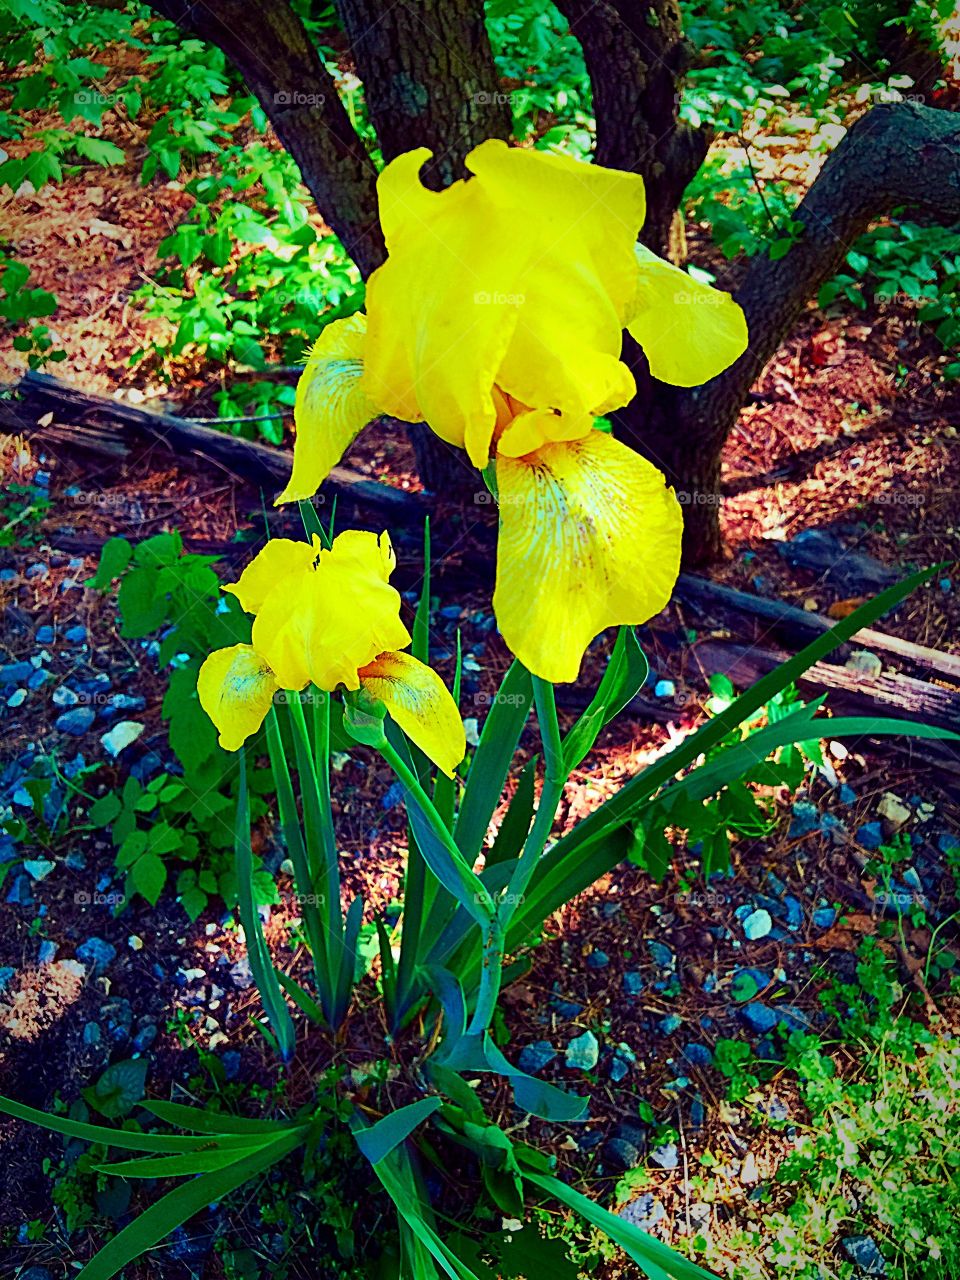 Iris in the garden
